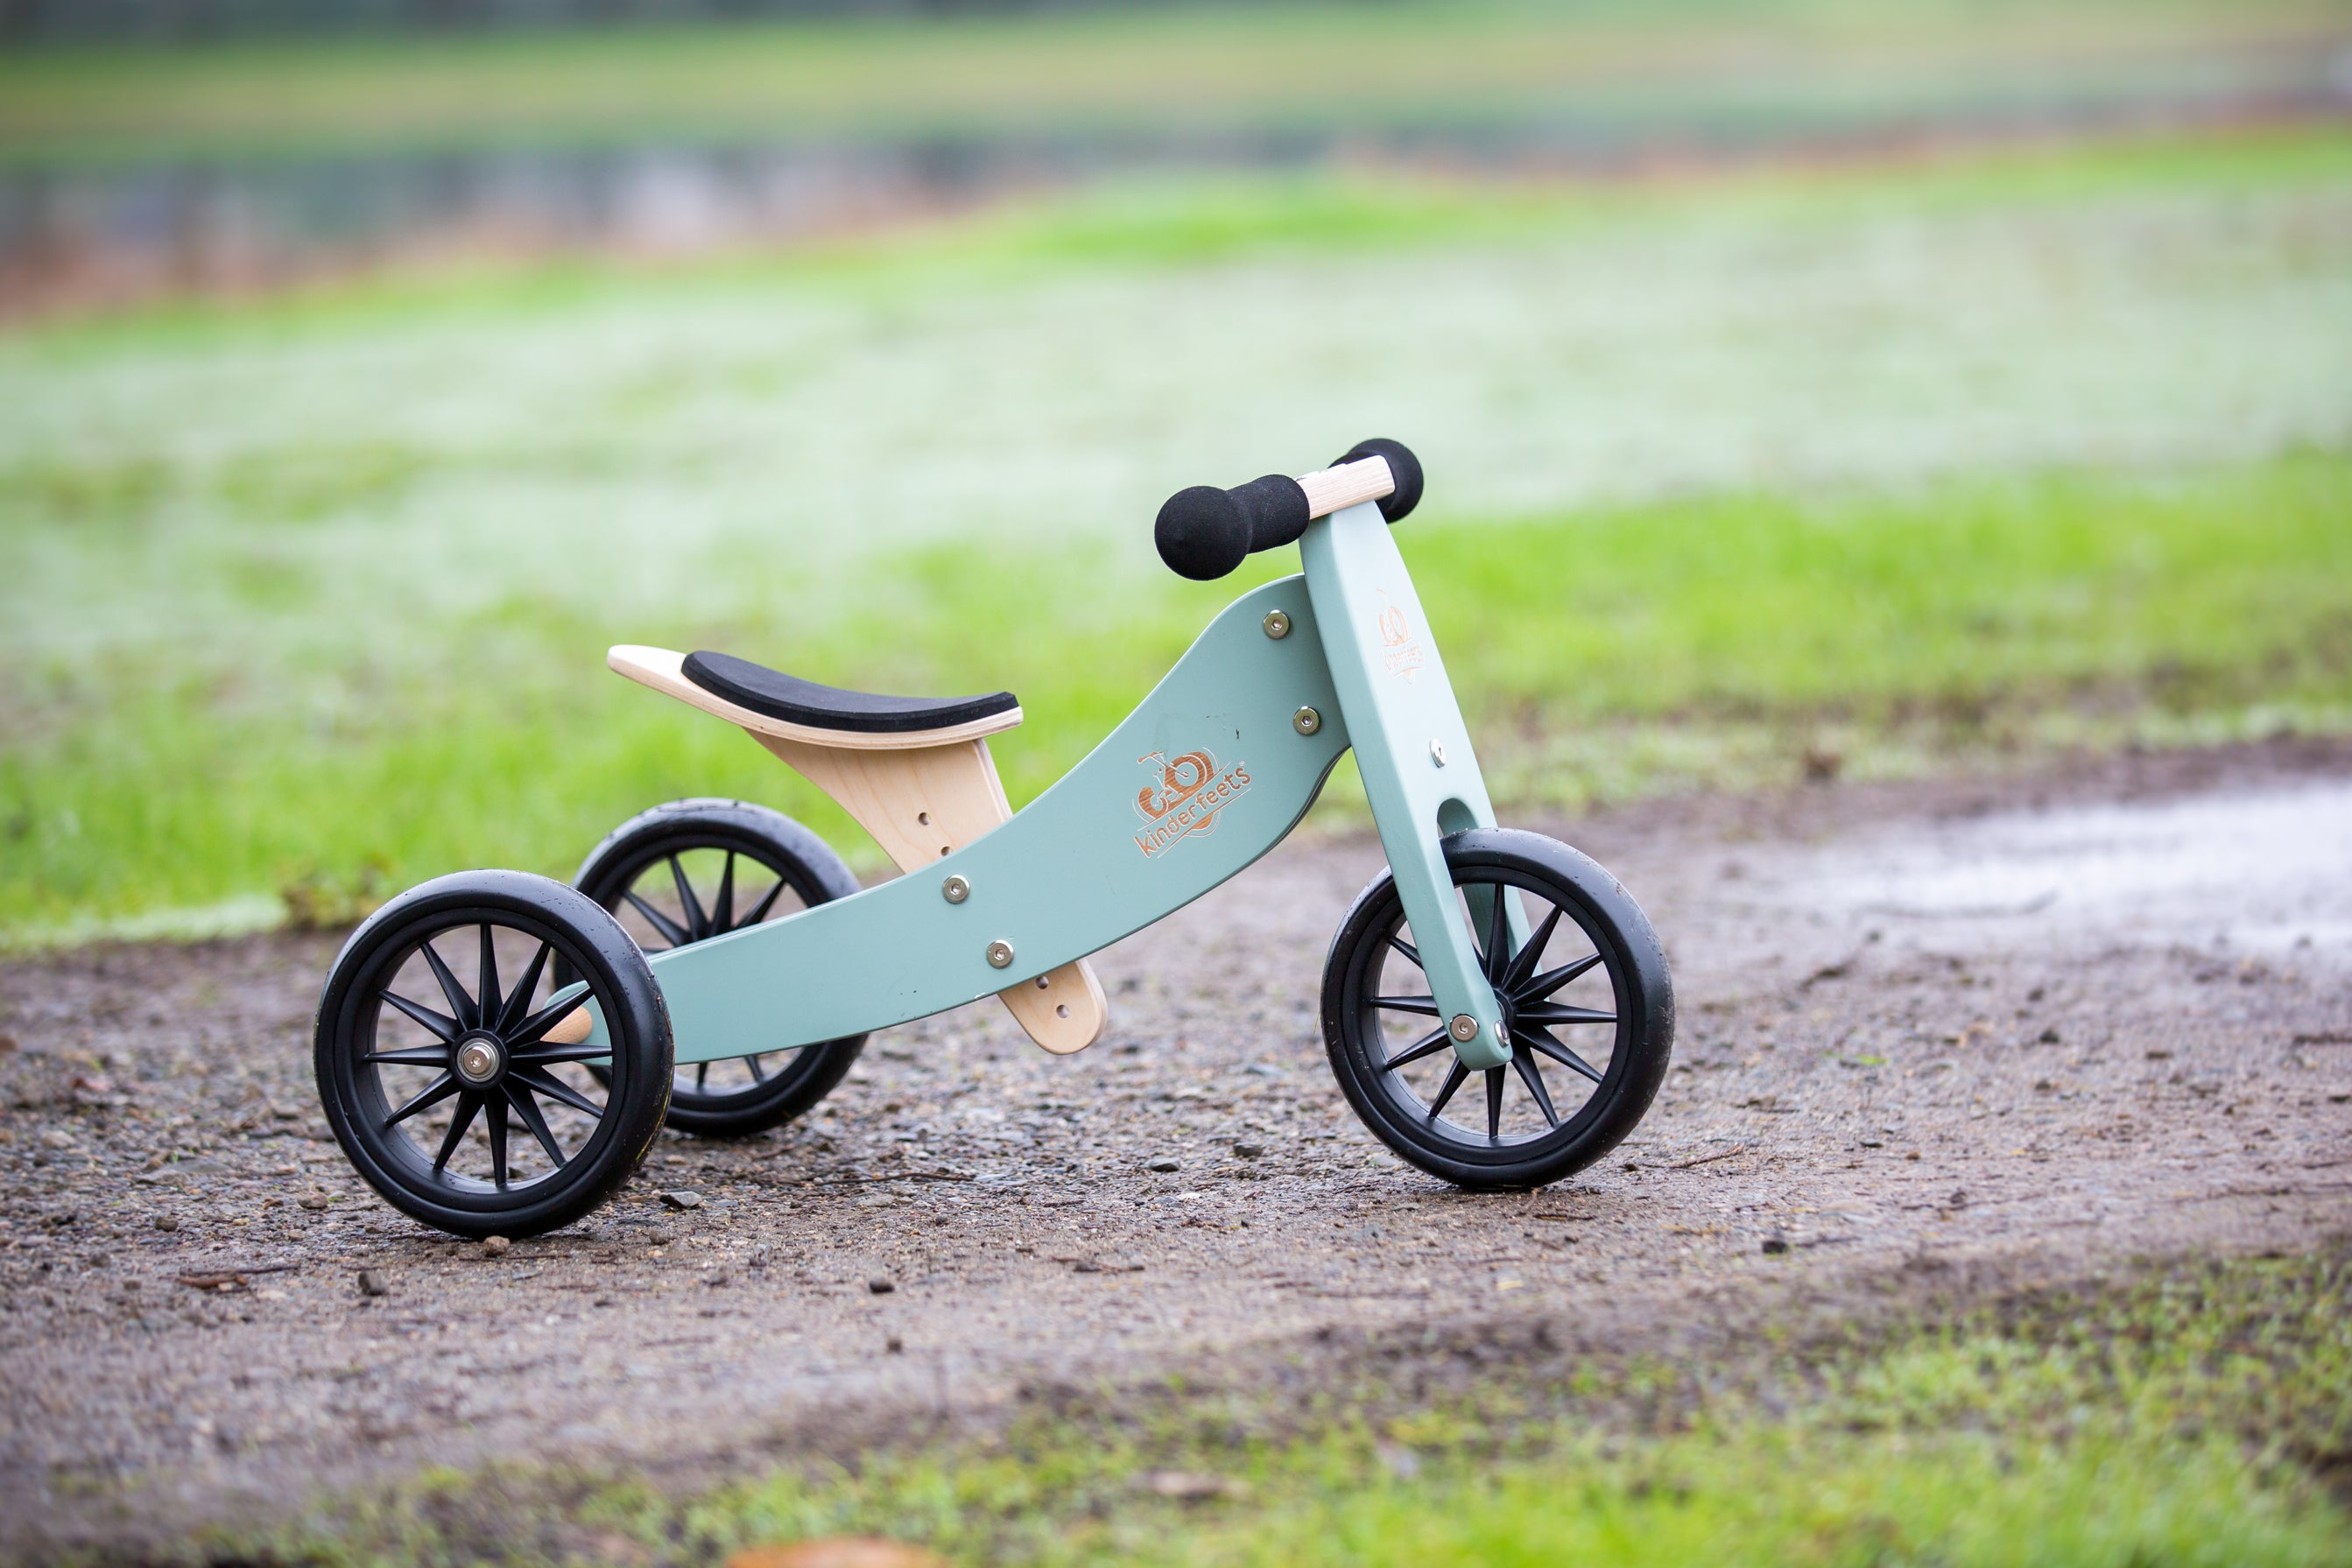 TINY TOT Trike/Balance Bike - Sage Green - Kinderfeets NZ